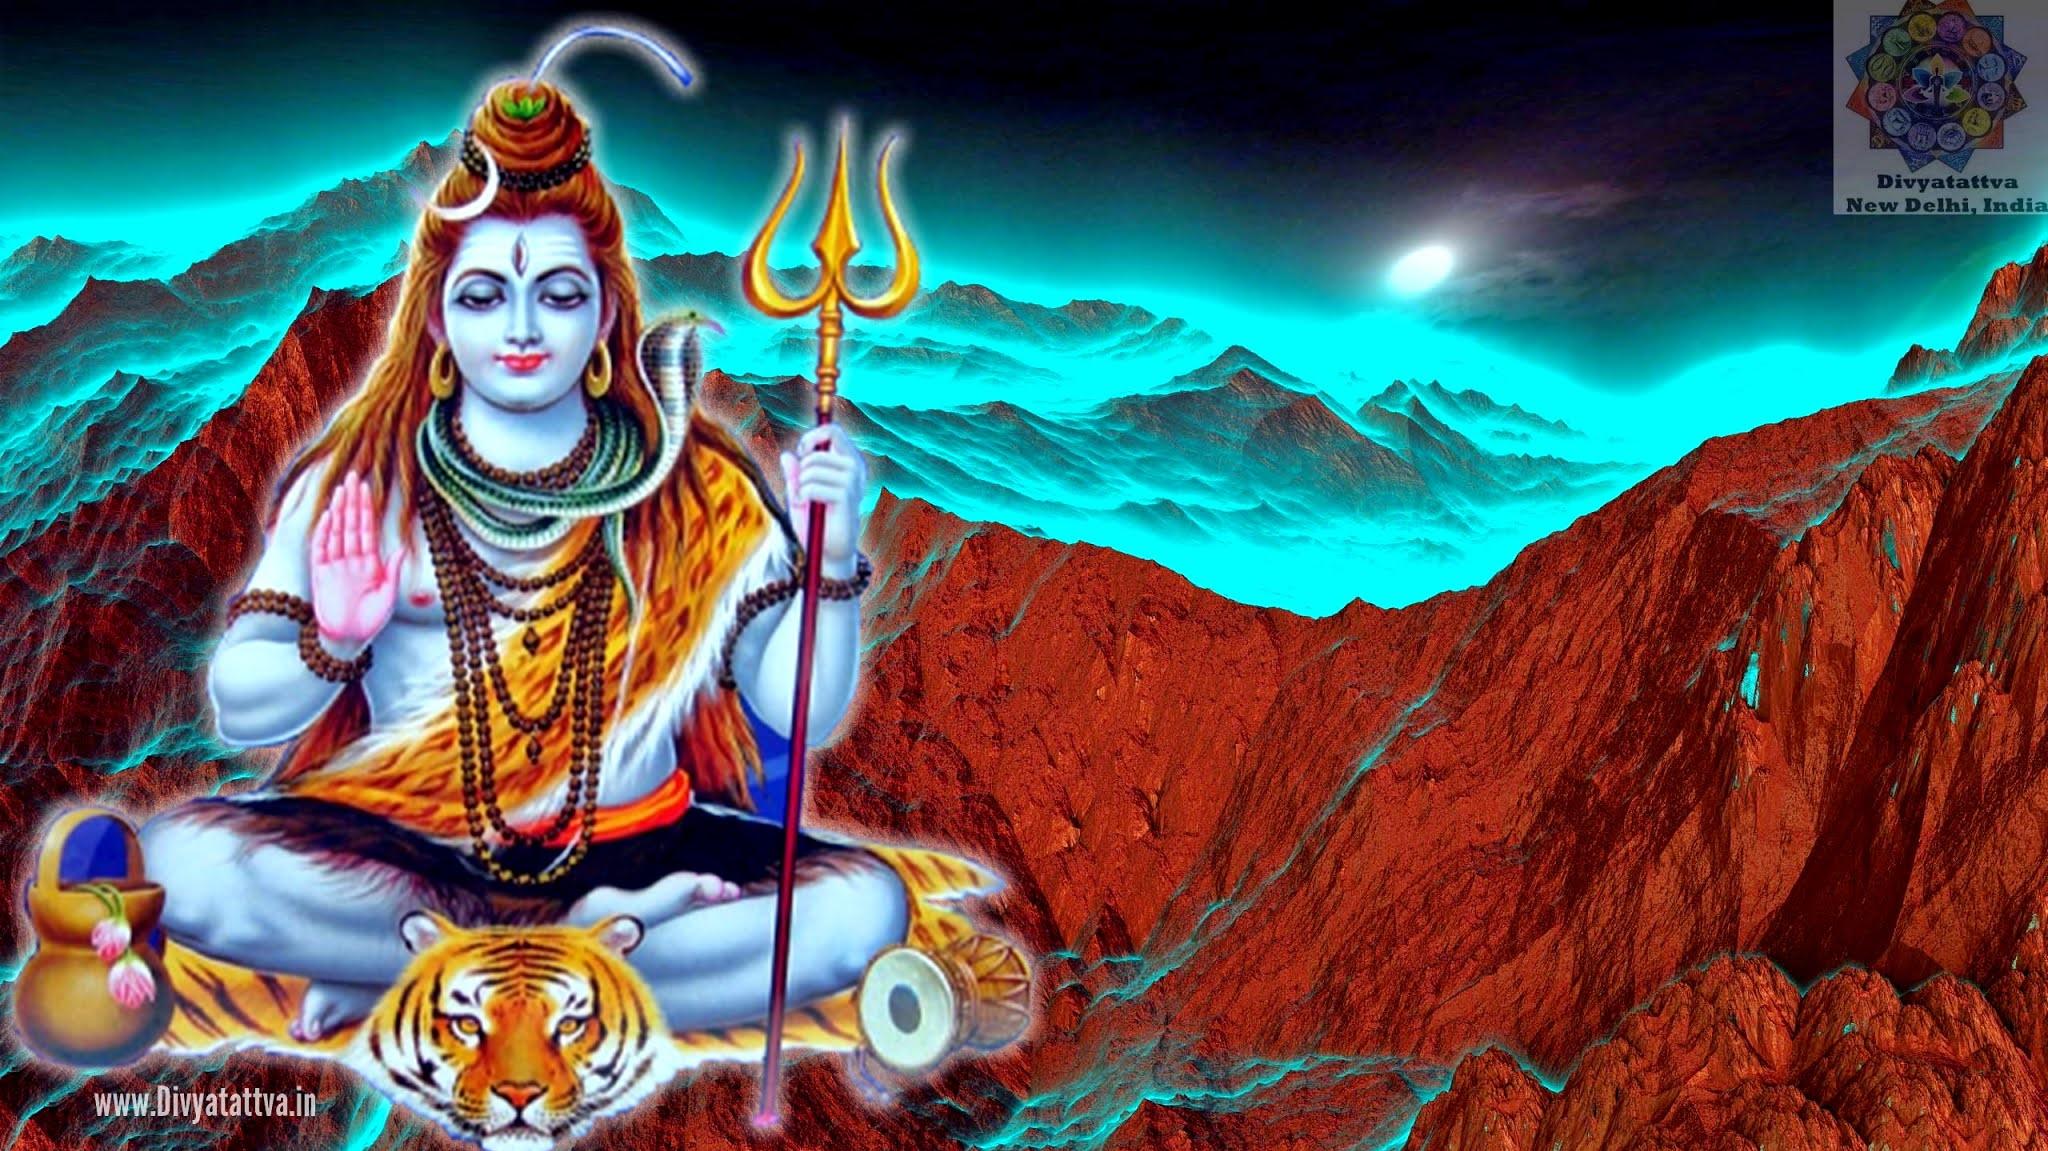 Wallpaper ID 557370  meditation hindu 1920x1080 lord shiva 1080P  free download